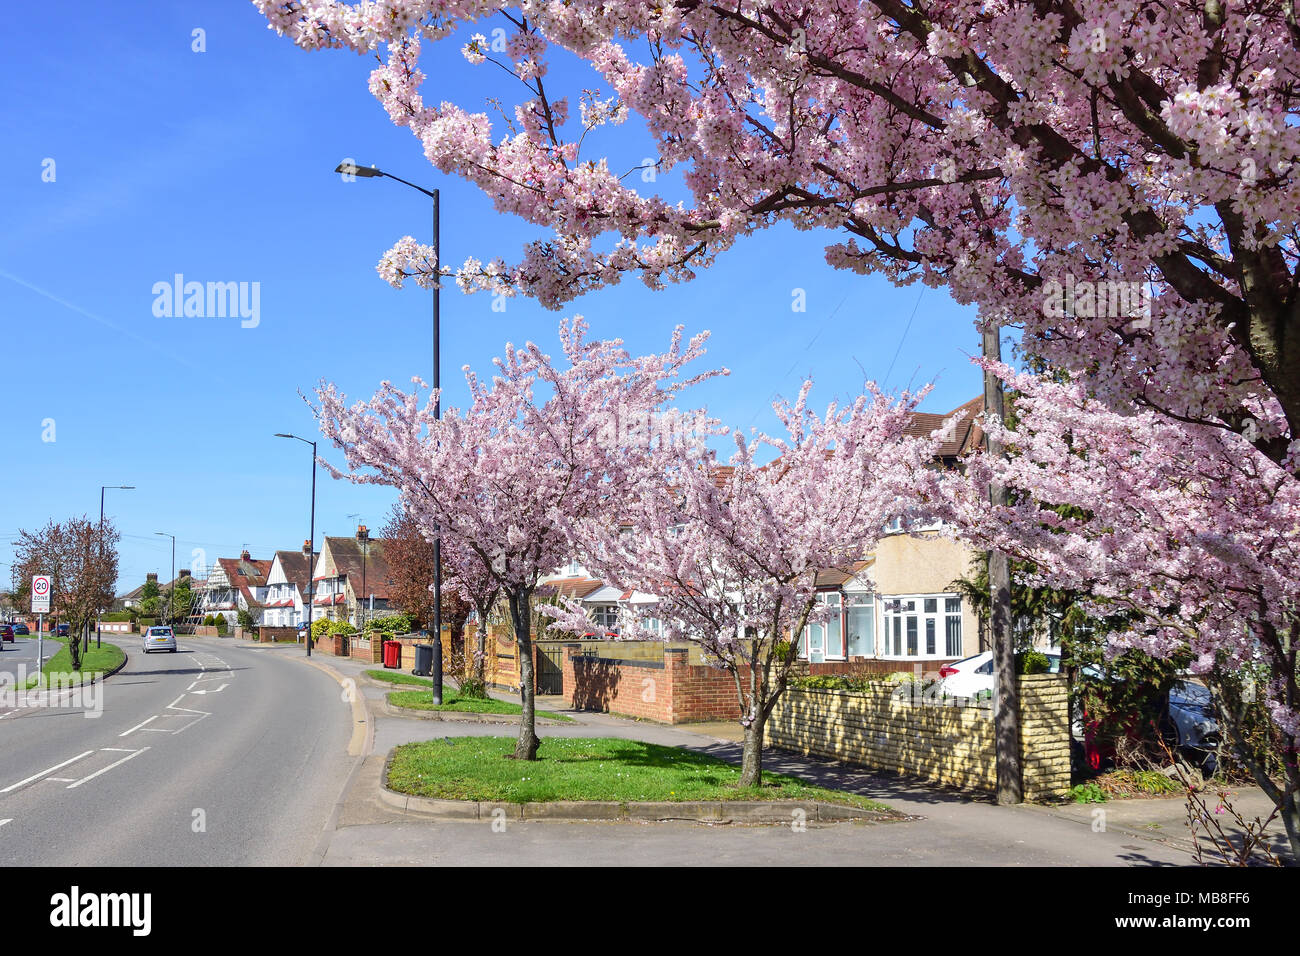 Scène de rue à l'oranger en fleurs, Stoke Poges Lane, Slough, Berkshire, Angleterre, Royaume-Uni Banque D'Images